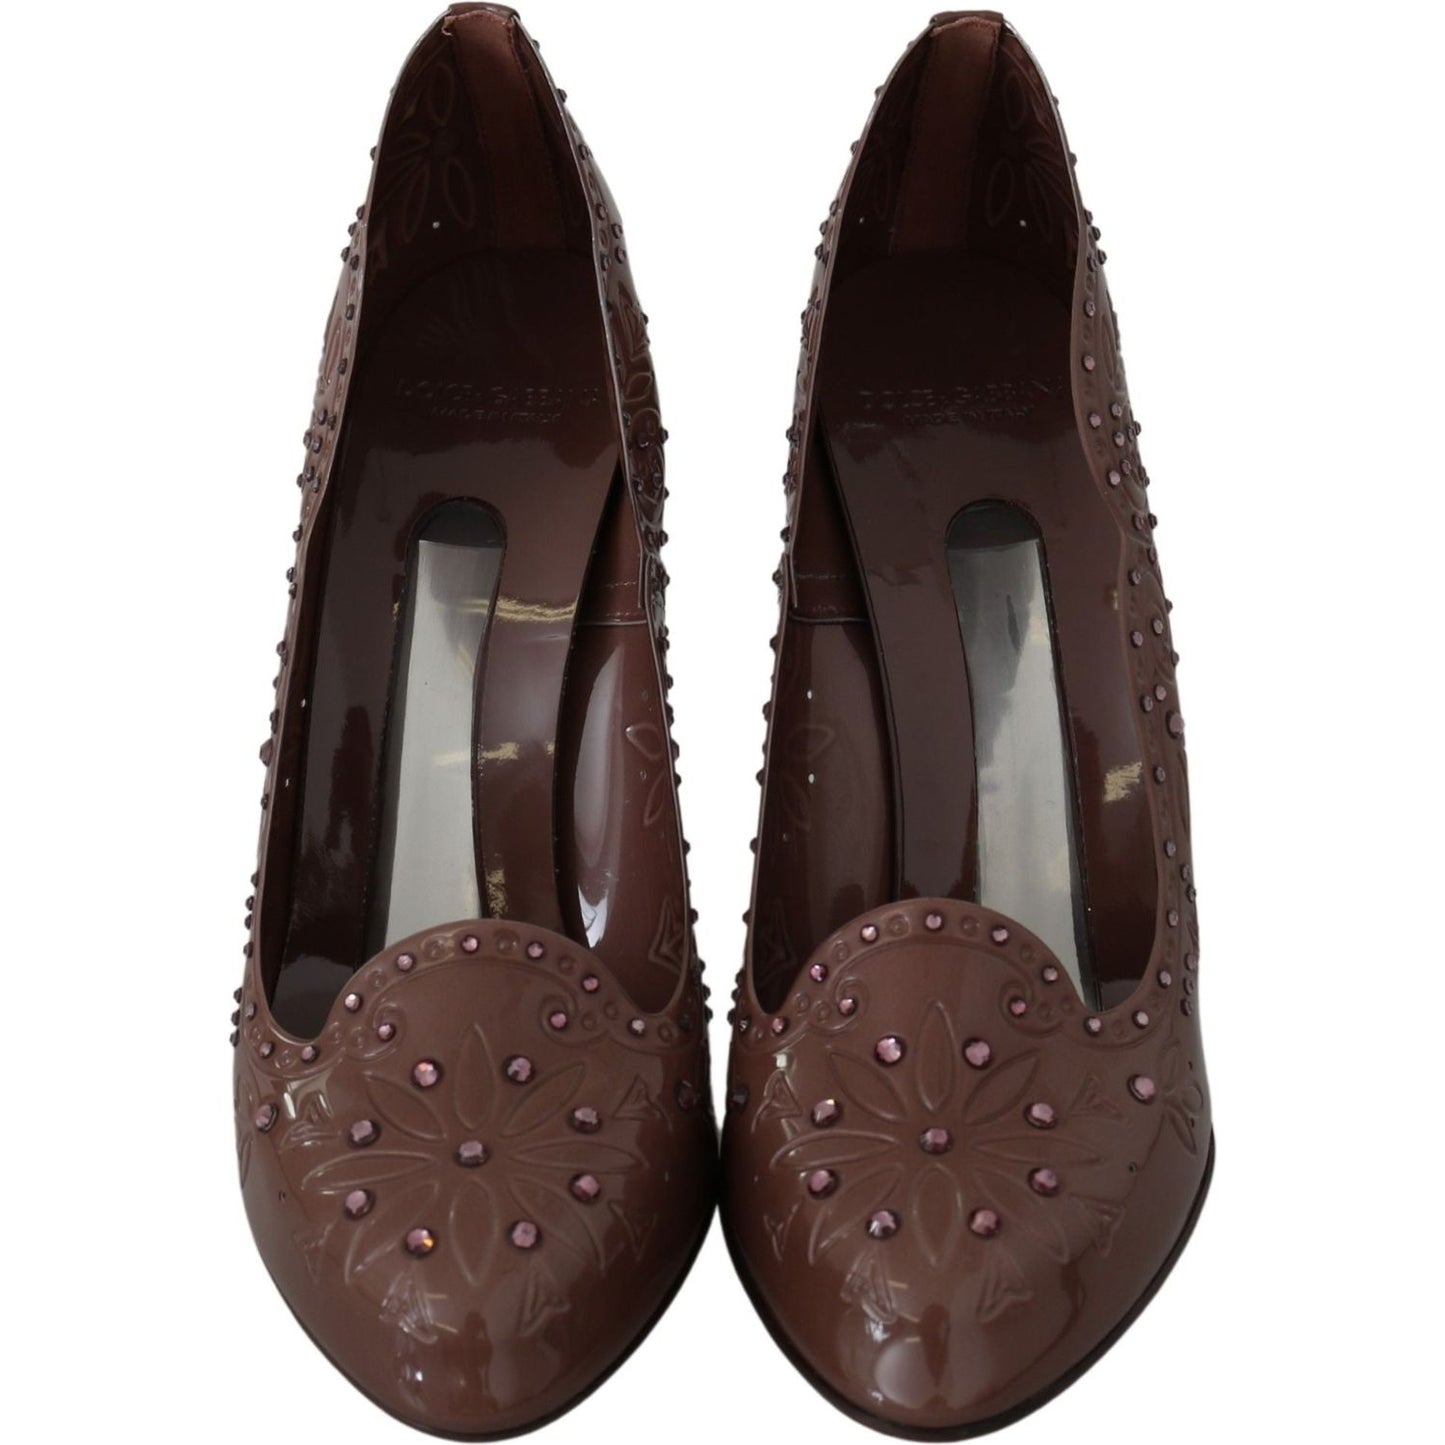 Dolce & Gabbana Elegant Crystal-Embellished Cinderella Pumps brown-floral-crystal-heels-cinderella-shoes IMG_8044-40384b72-2c6.jpg